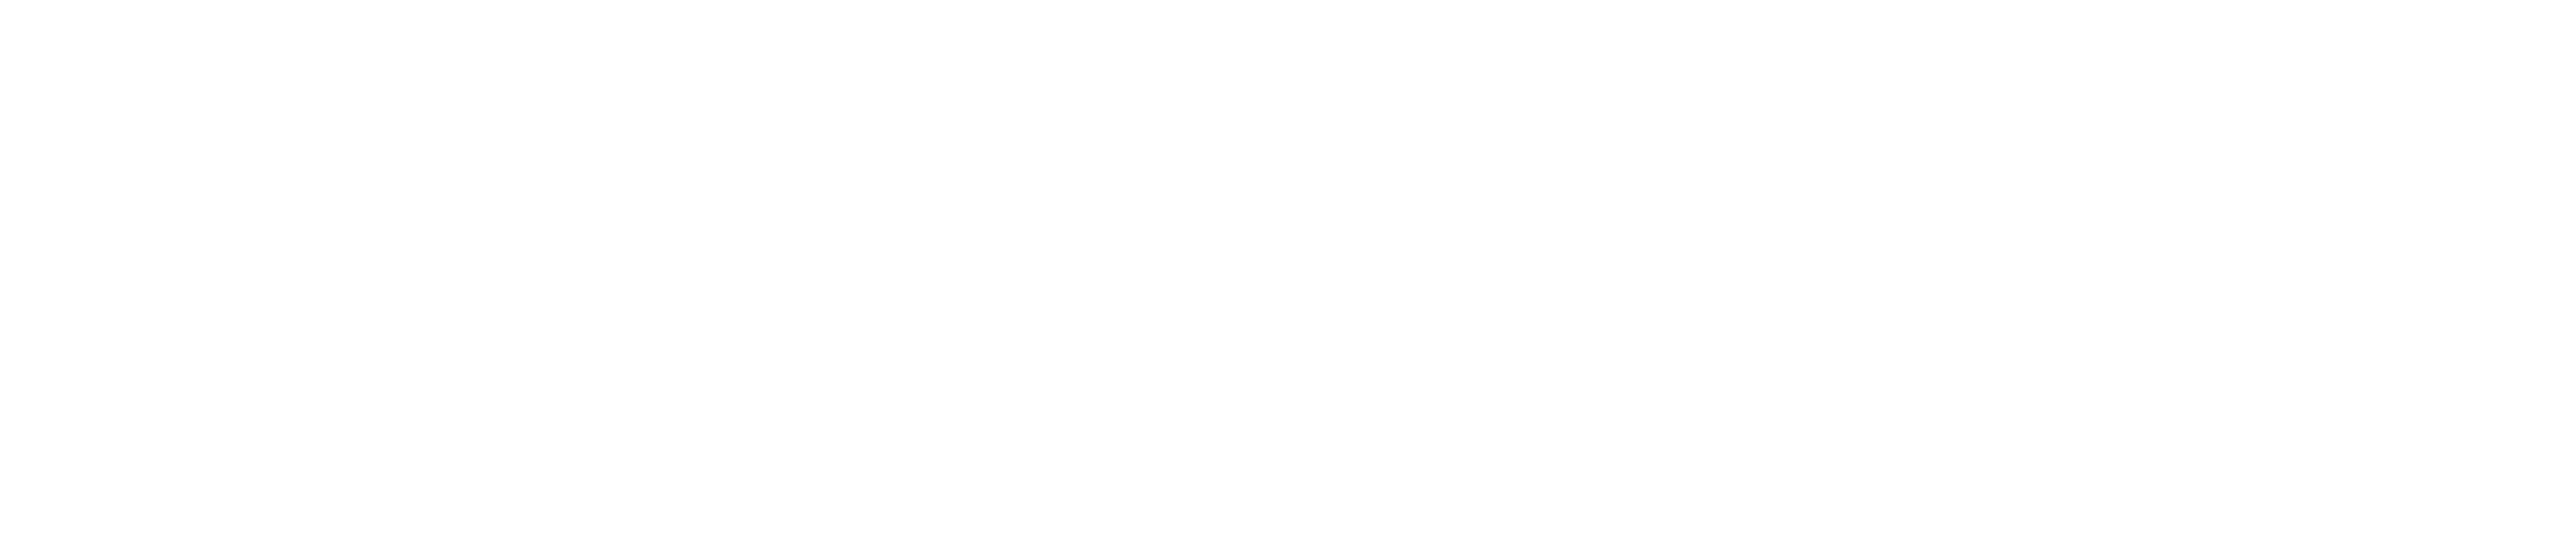 Preach London logo